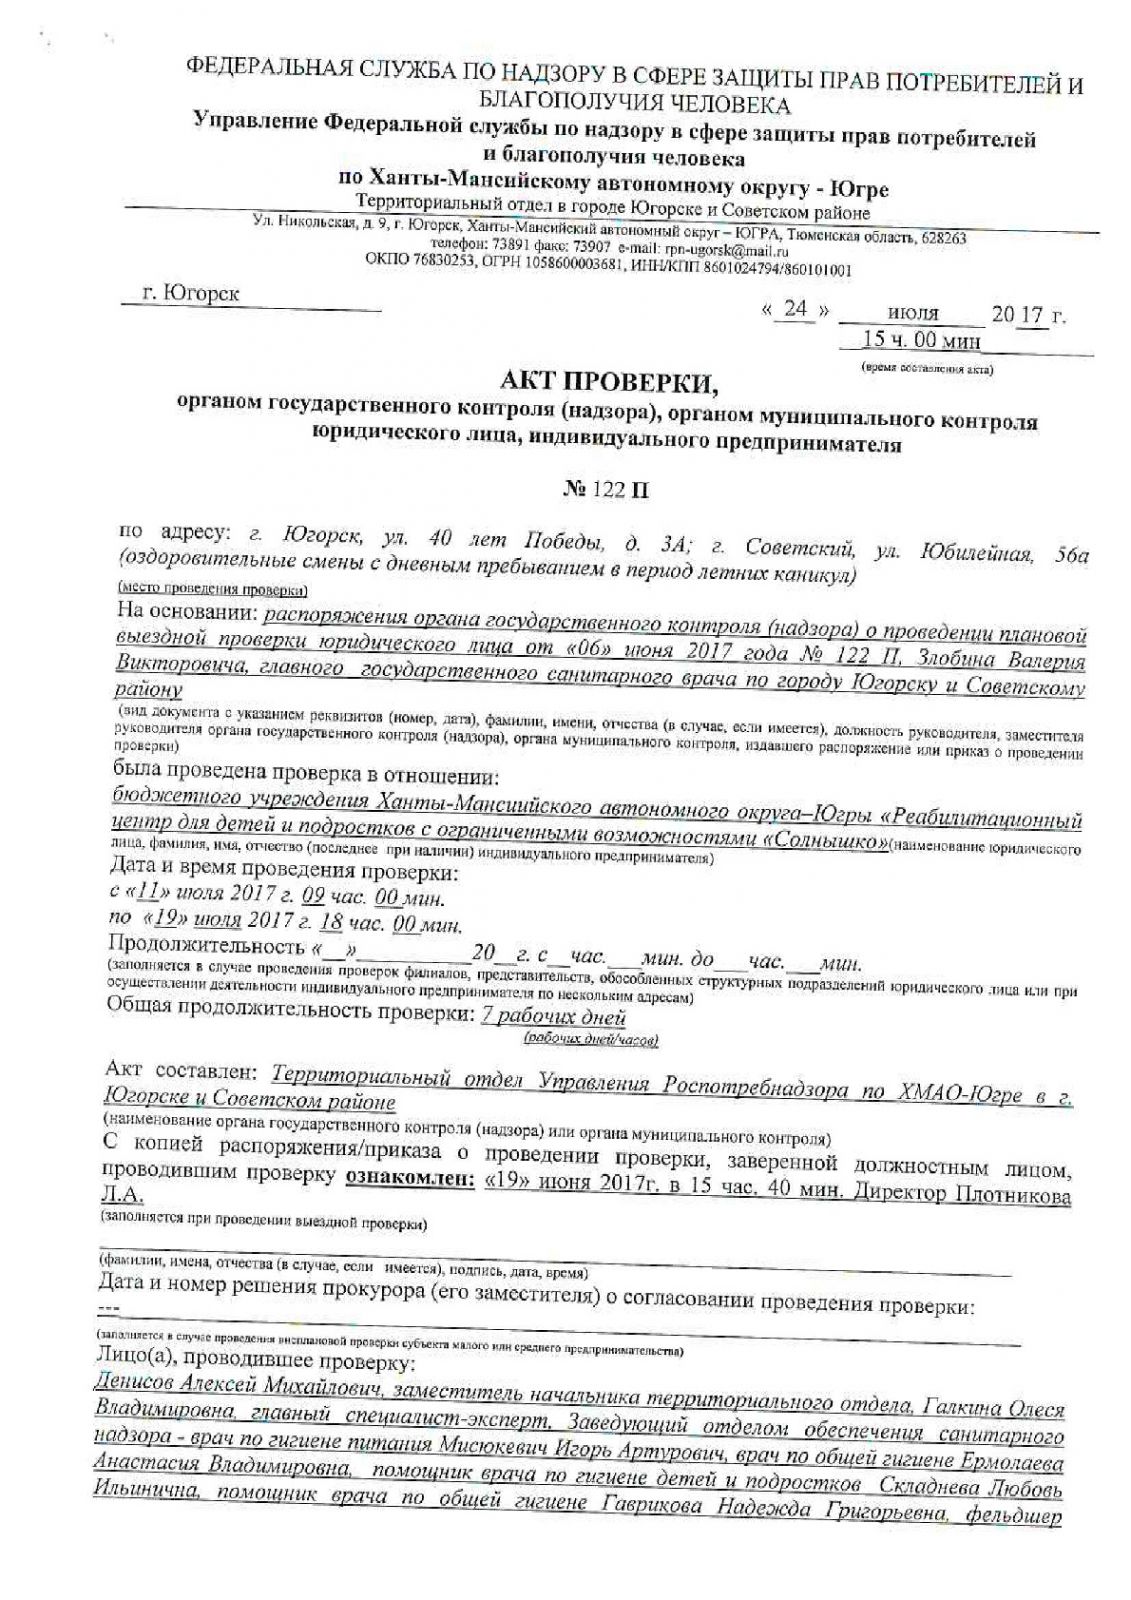 Акт проверки органом государственного контроля (надзора) юридического лица, индивидуального предпринимателя № 122П от 24.07.2017